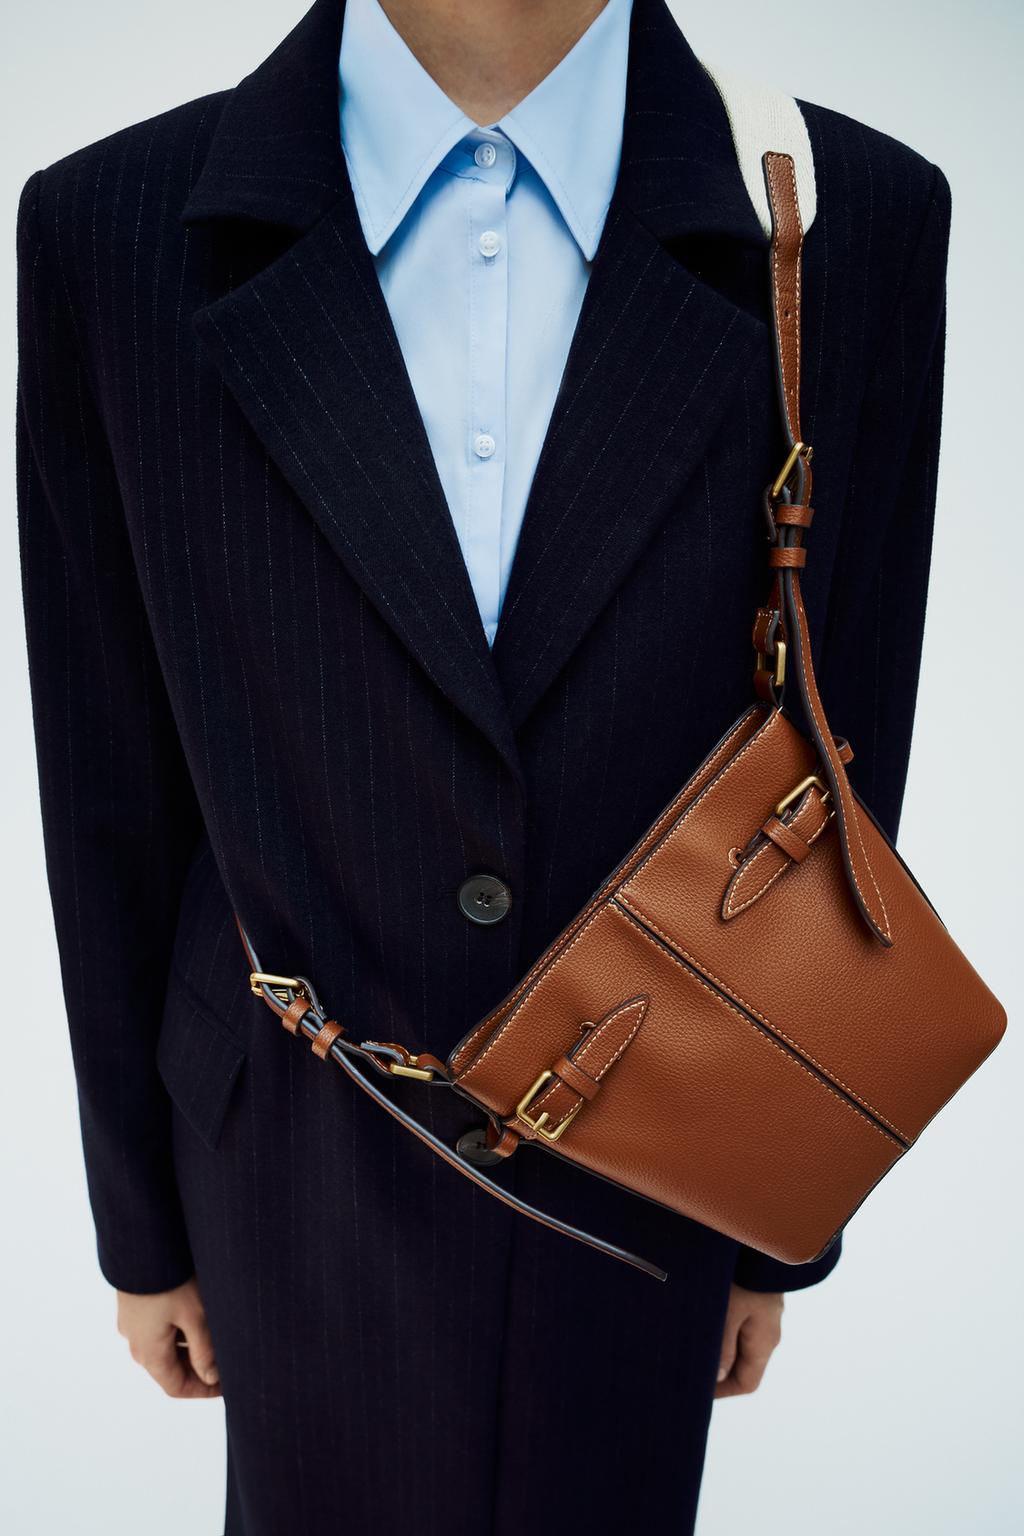 Сумка Zara Bucket With Buckles, коричневый широкая сумка через плечо сменный ремешок для кошелька цепочка для женской сумки ручная сумка аксессуары регулируемый ремень для сумок